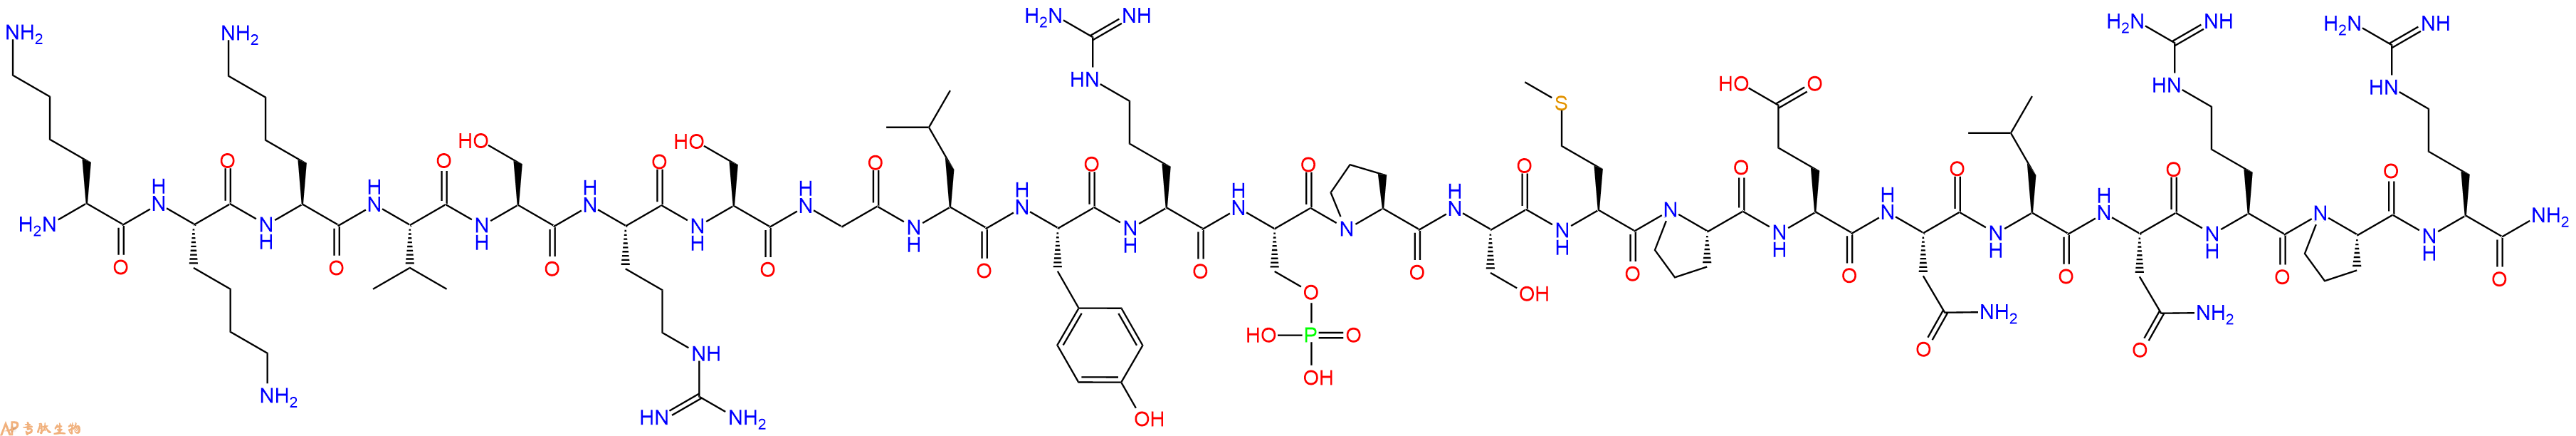 专肽生物产品磷酸化肽2CDC25C, CHK 1and CHK 2 Substrate, phospho